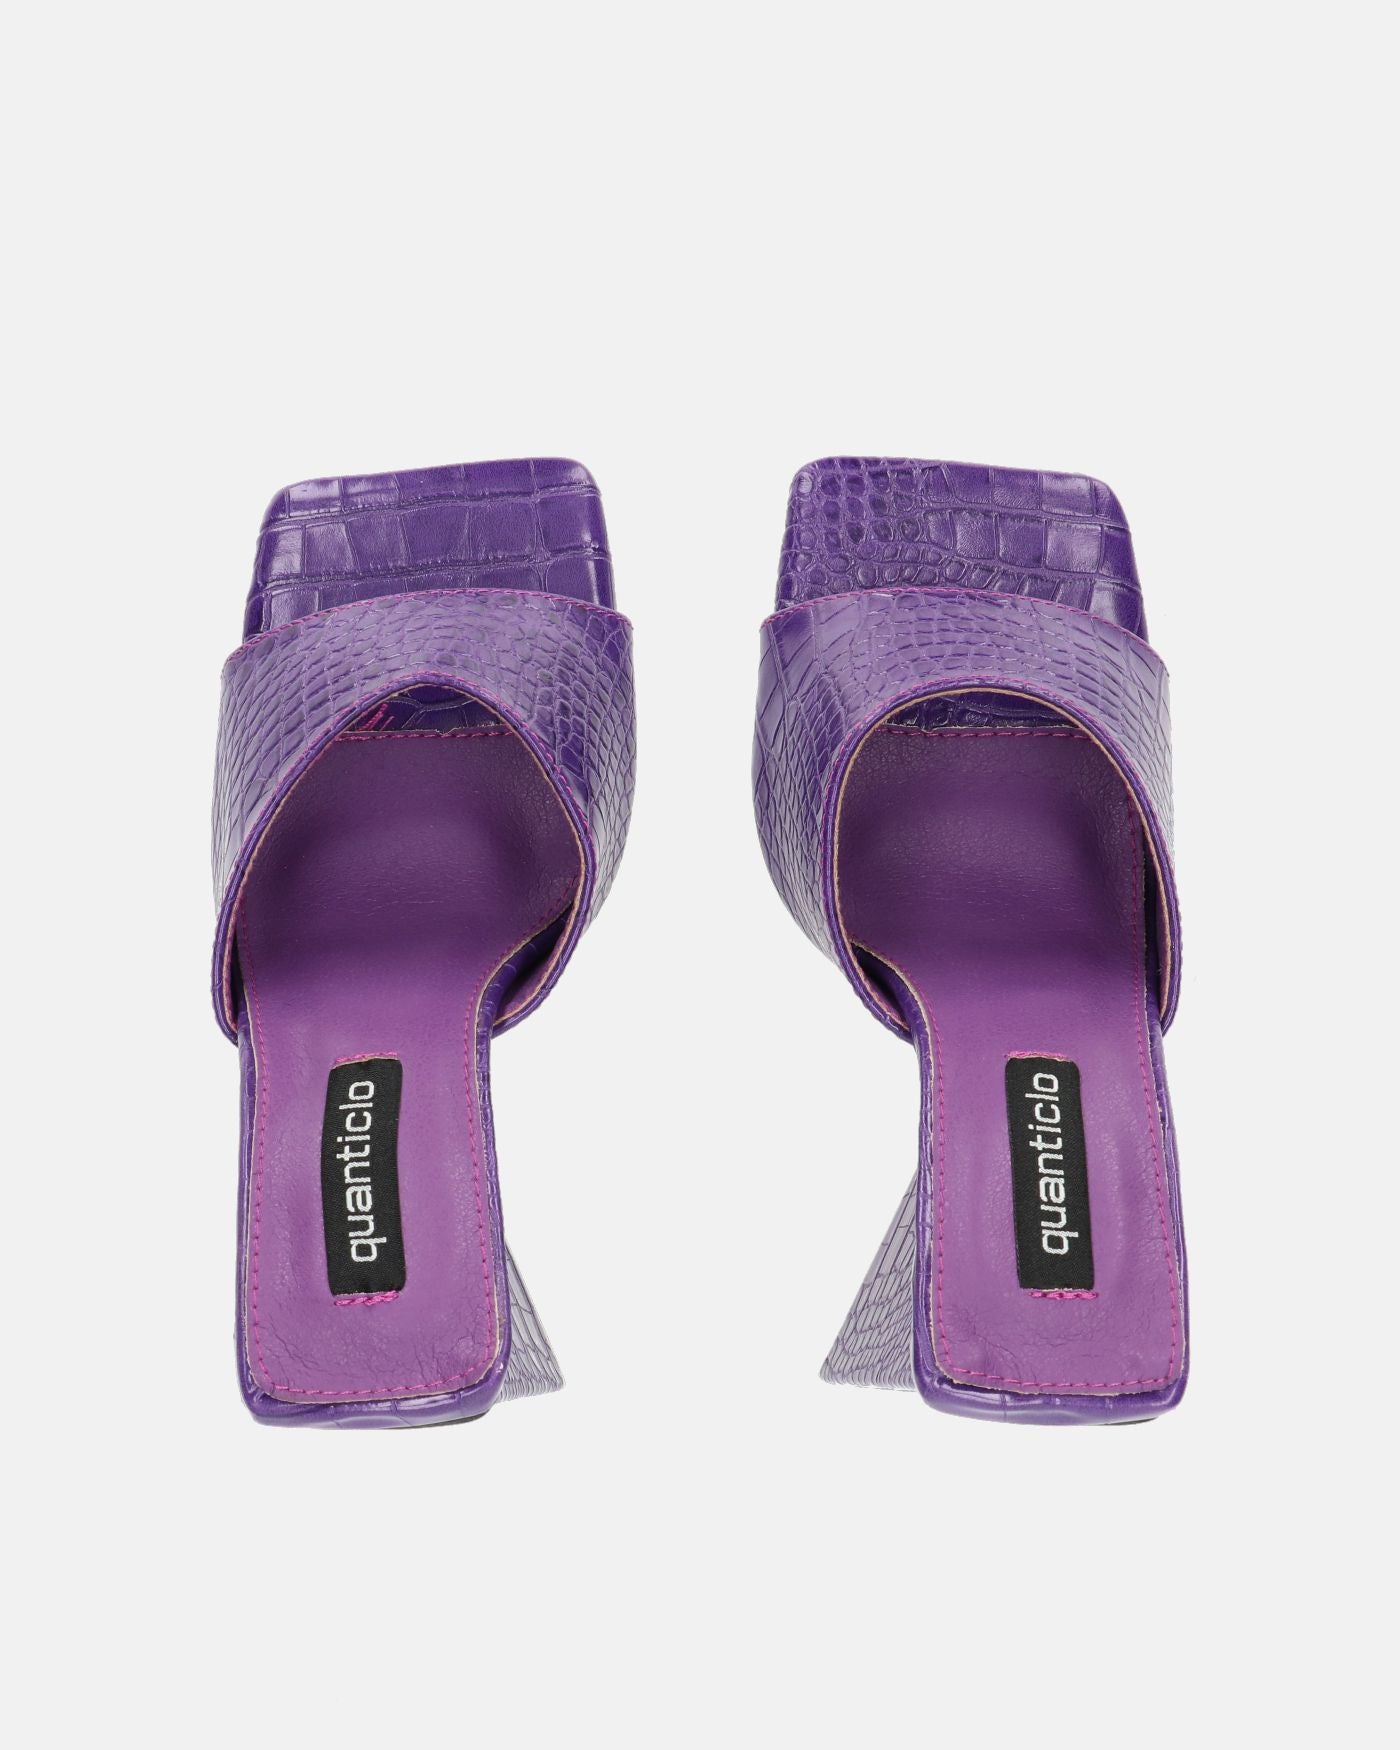 BUKET - sandalias de tacón en color violeta cocodrilo